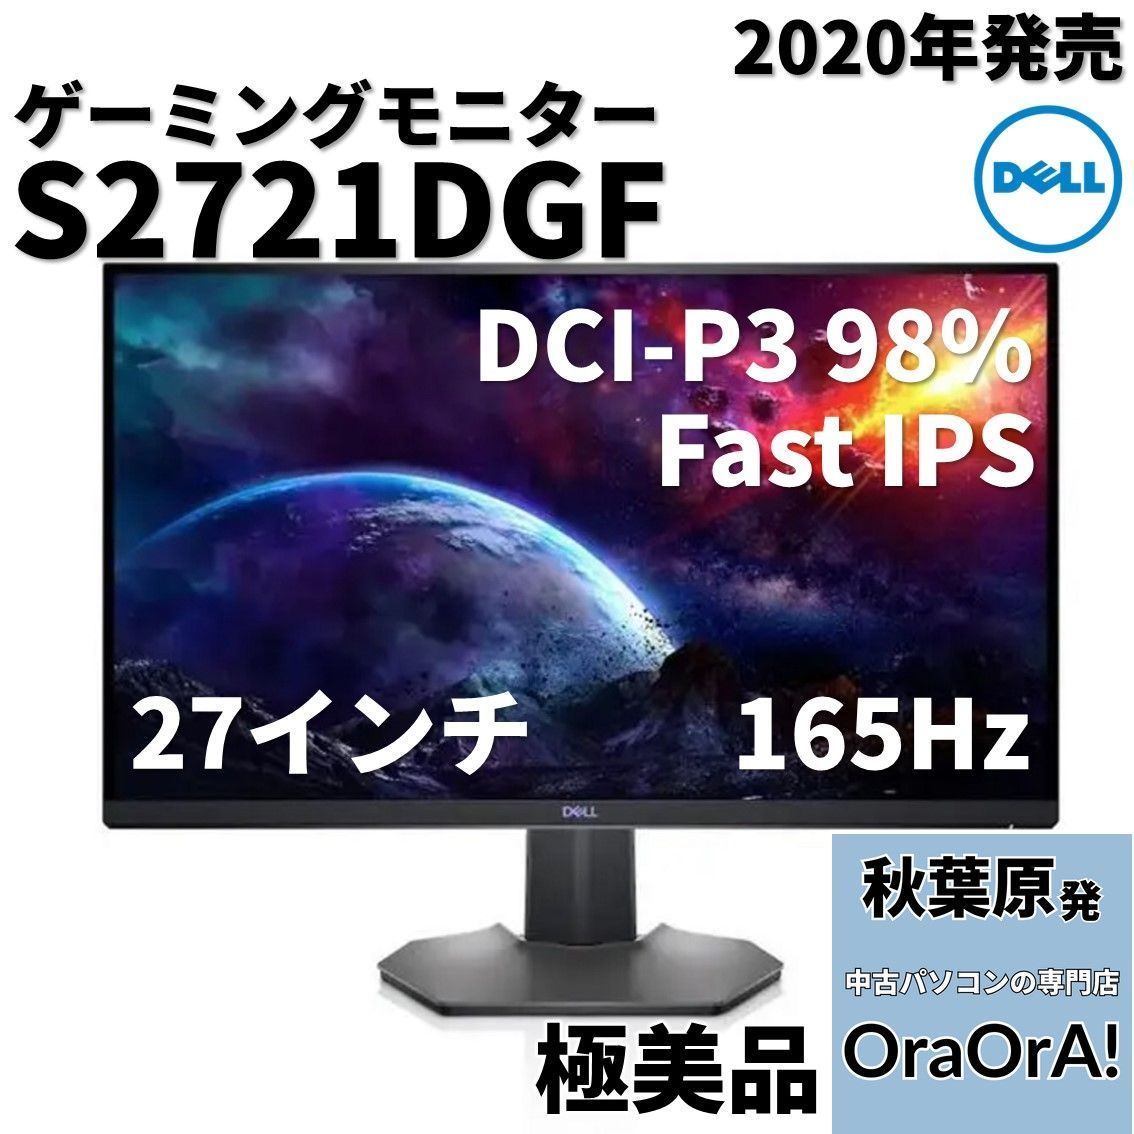 【Dell】S2721DGF 27インチゲーミングモニター